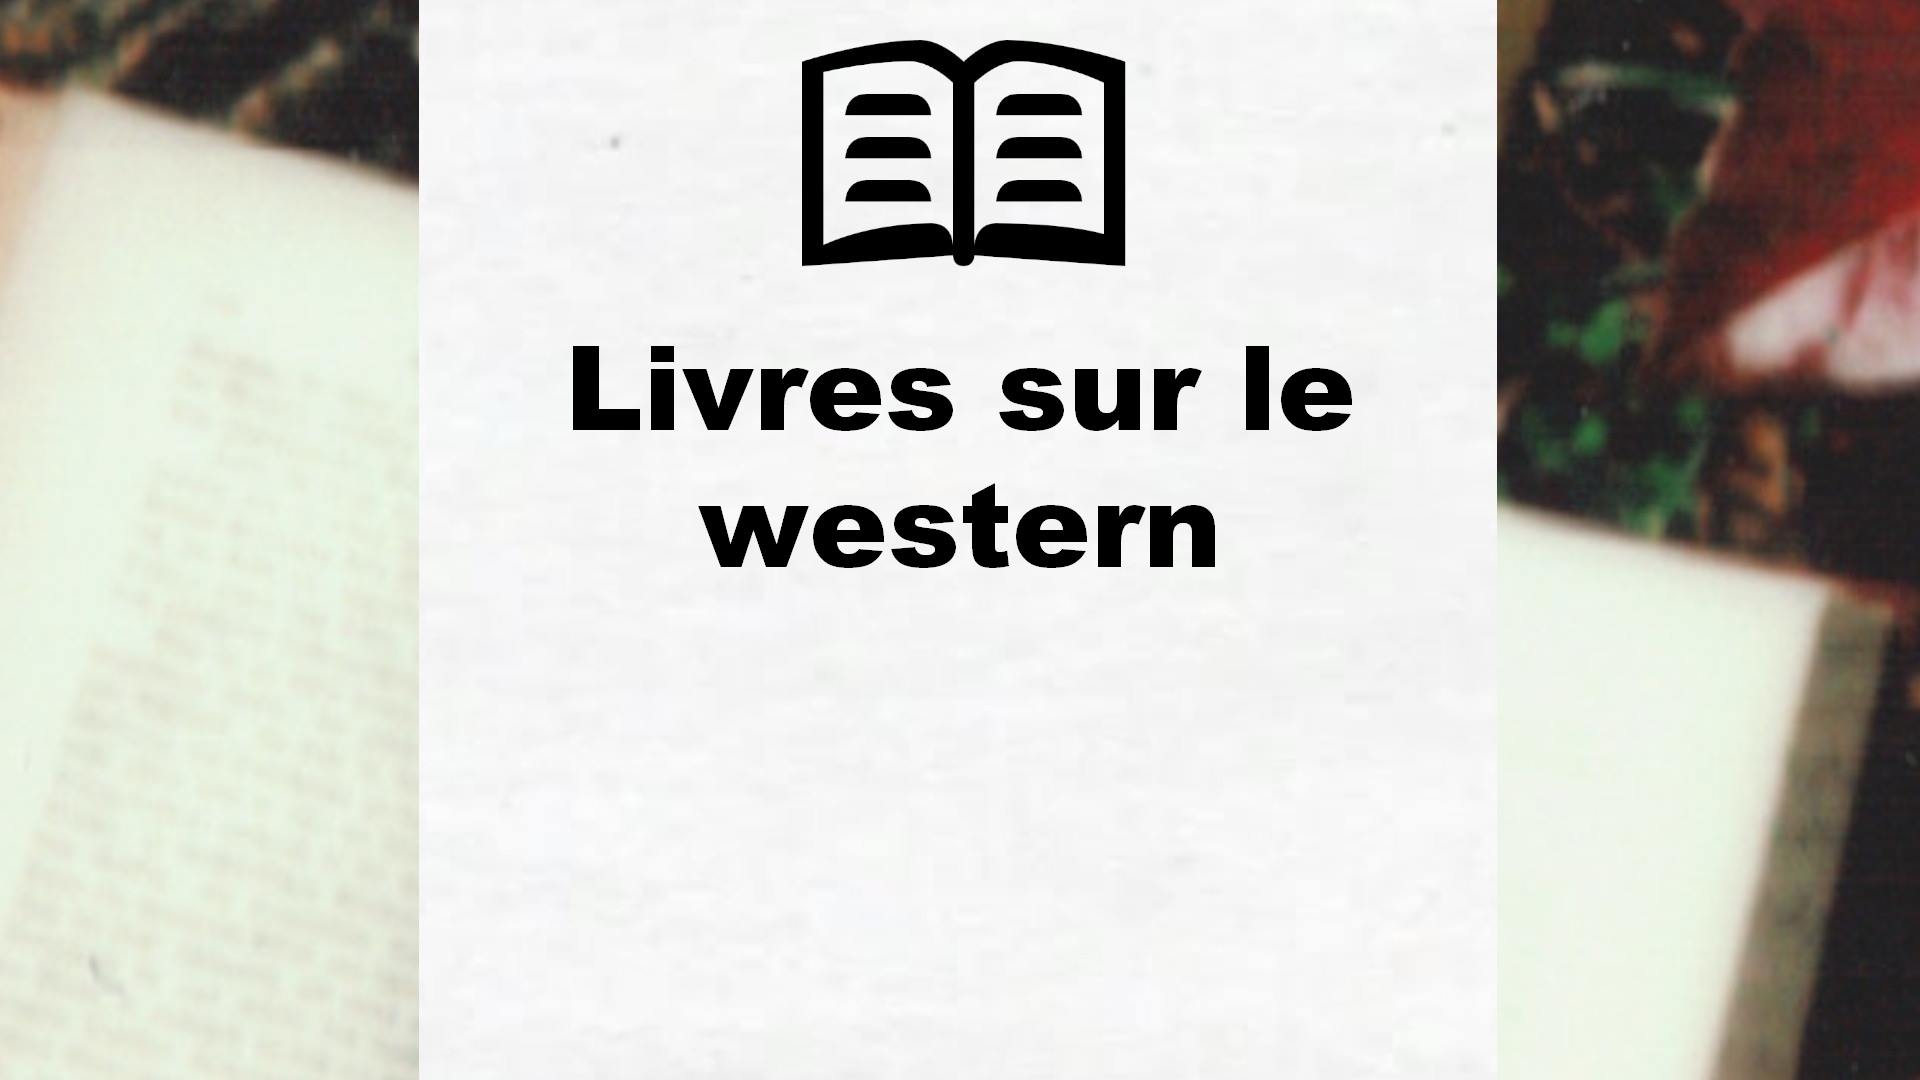 Livres sur le western